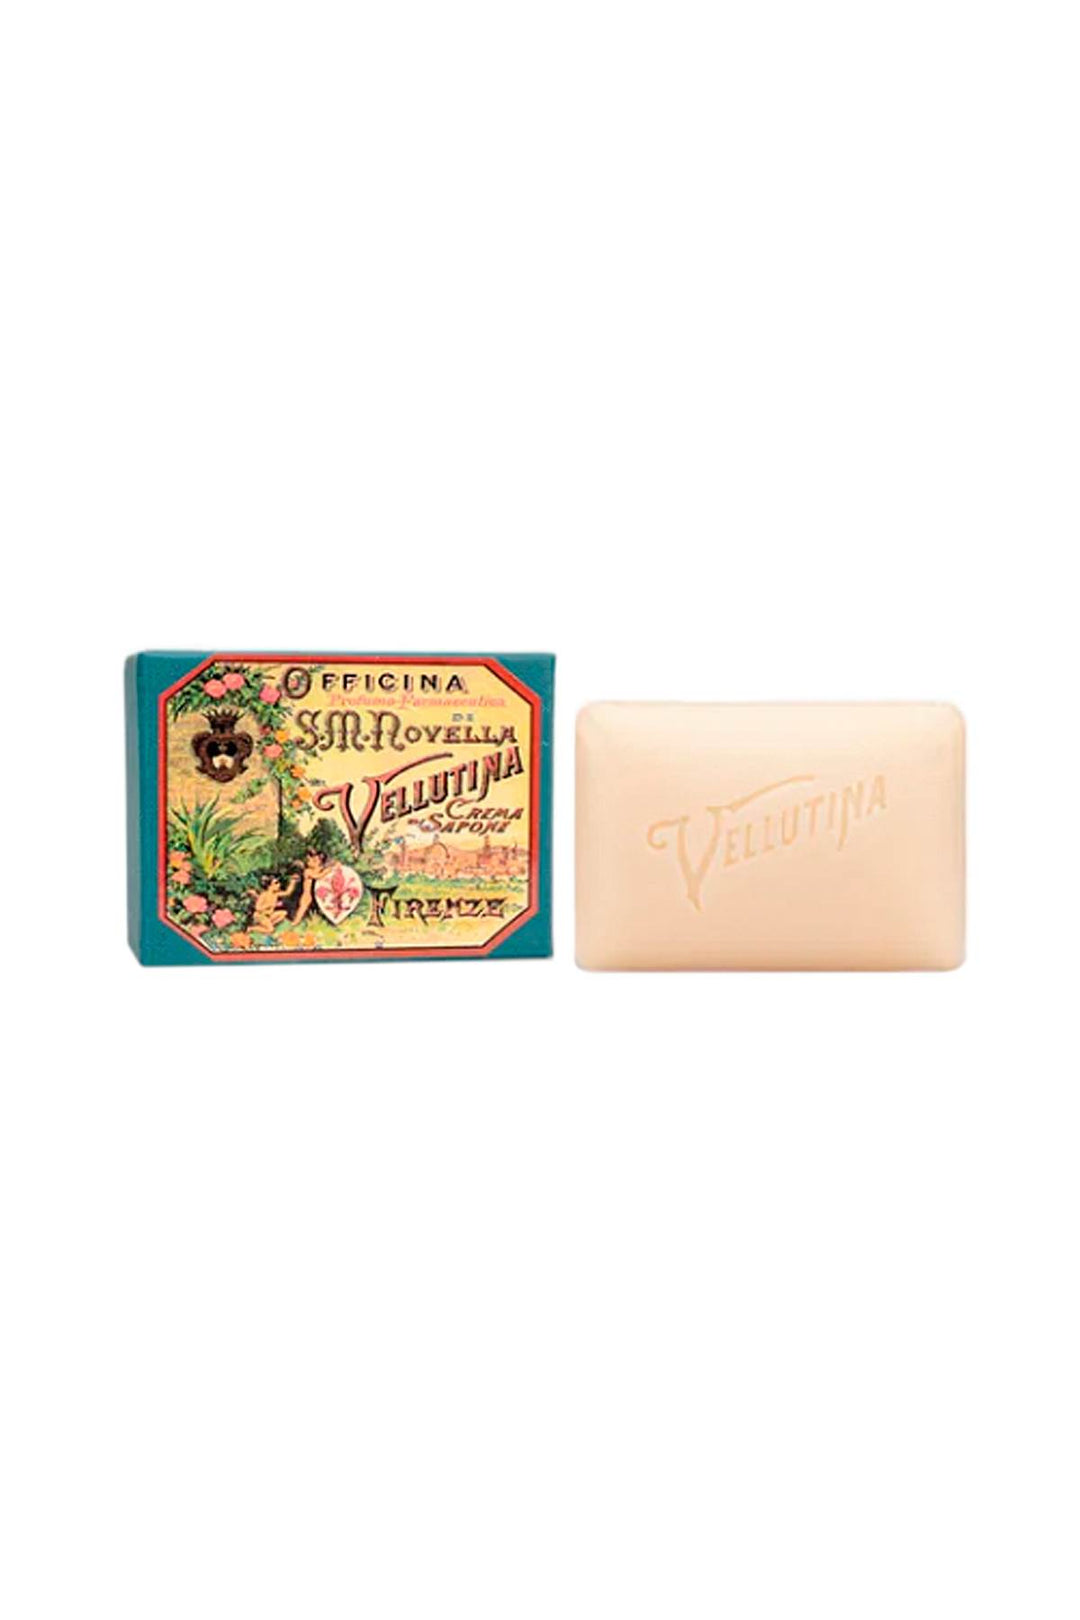 Officina profumo farmaceutica di s.m.nov vellutina soap - 150g-0